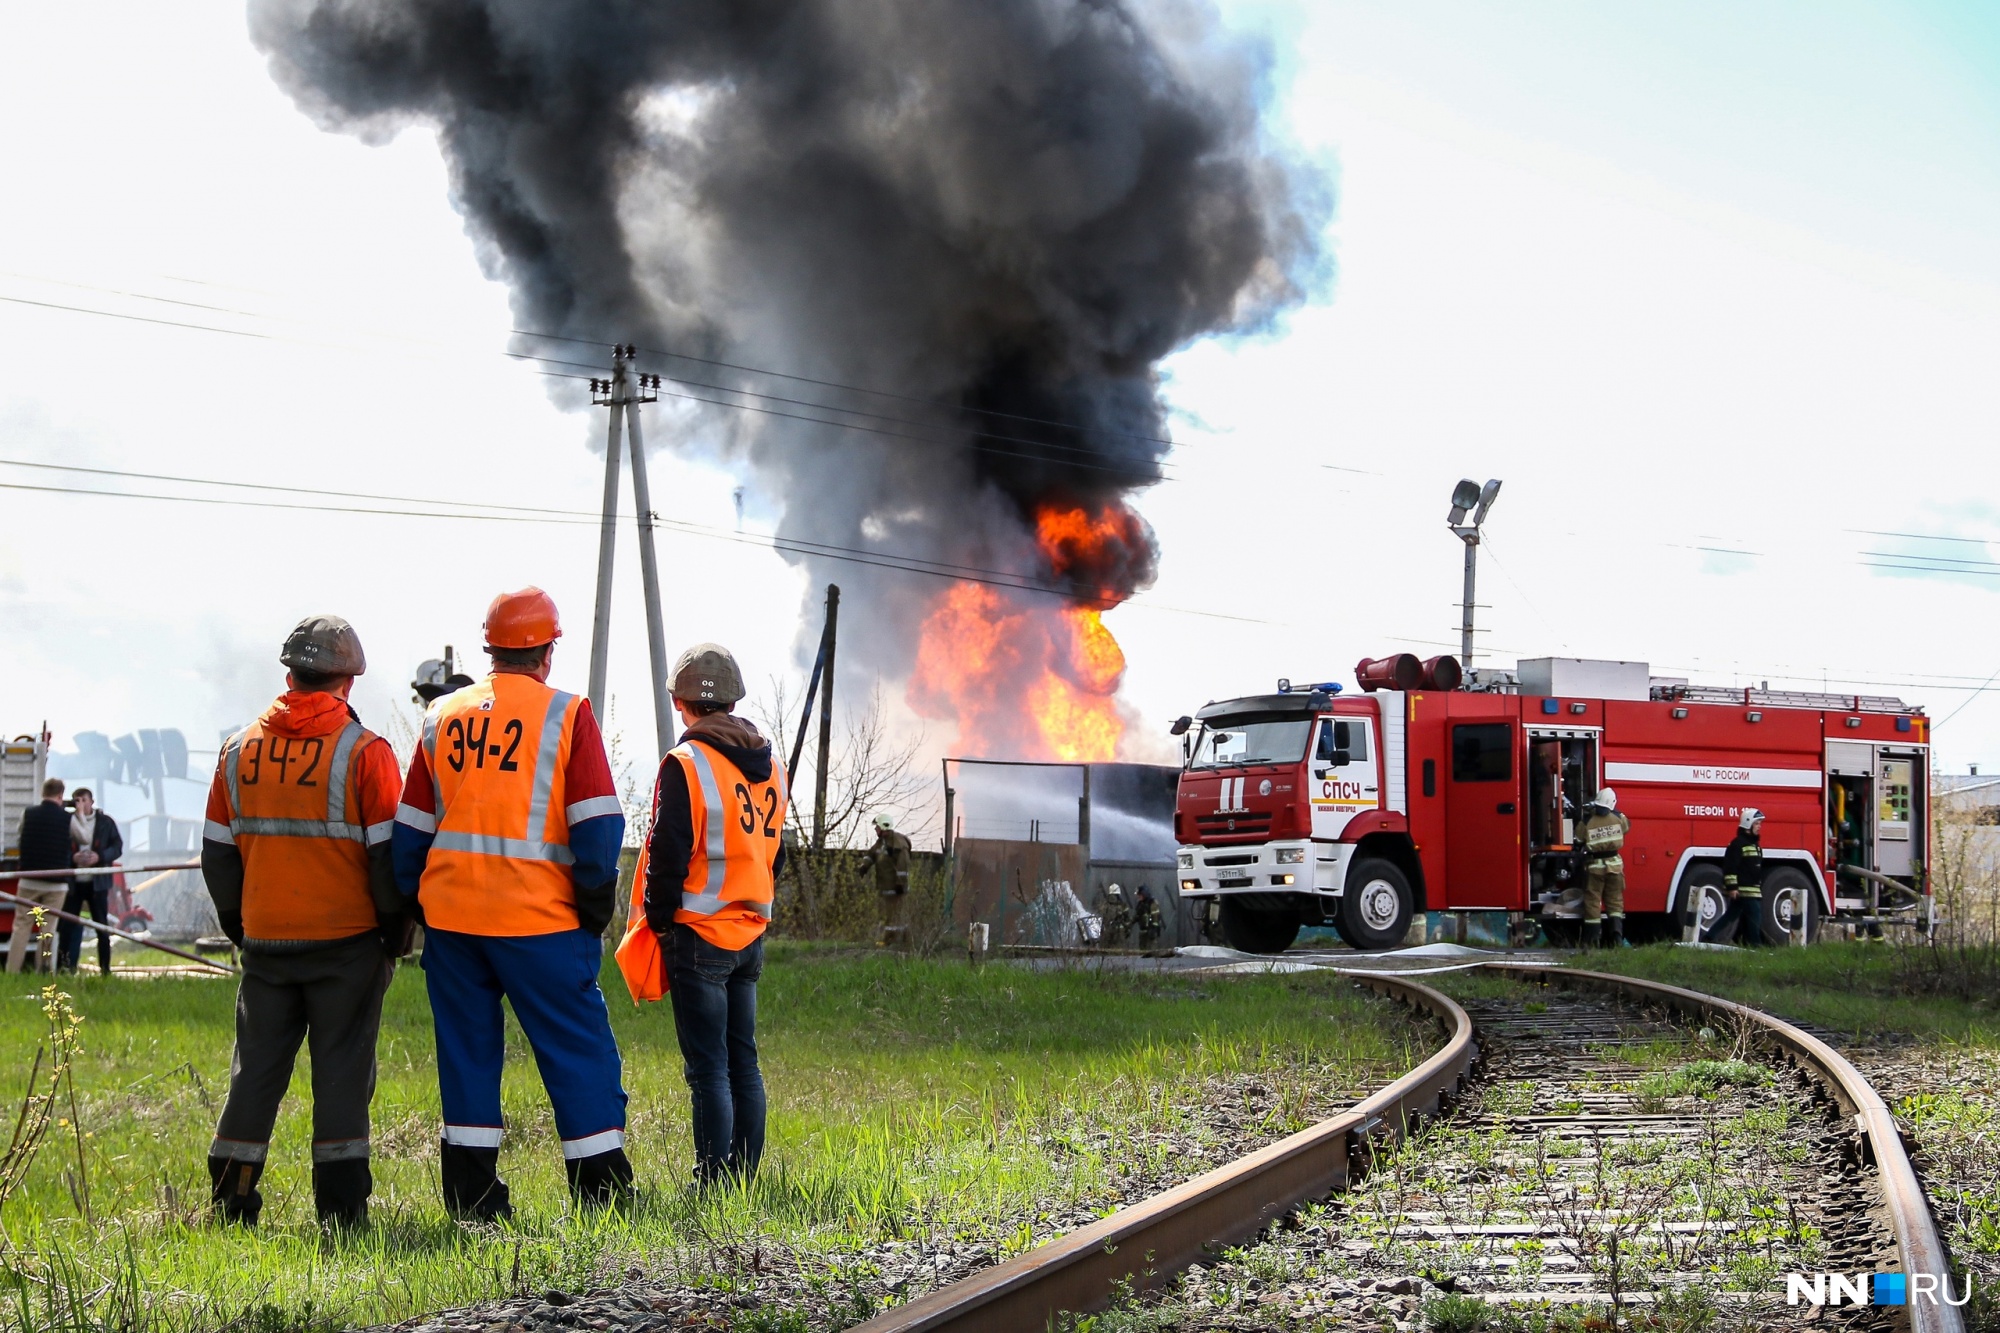 Железнодорожники наблюдали со стороны за пламенем, отпуская звонкие комментарии